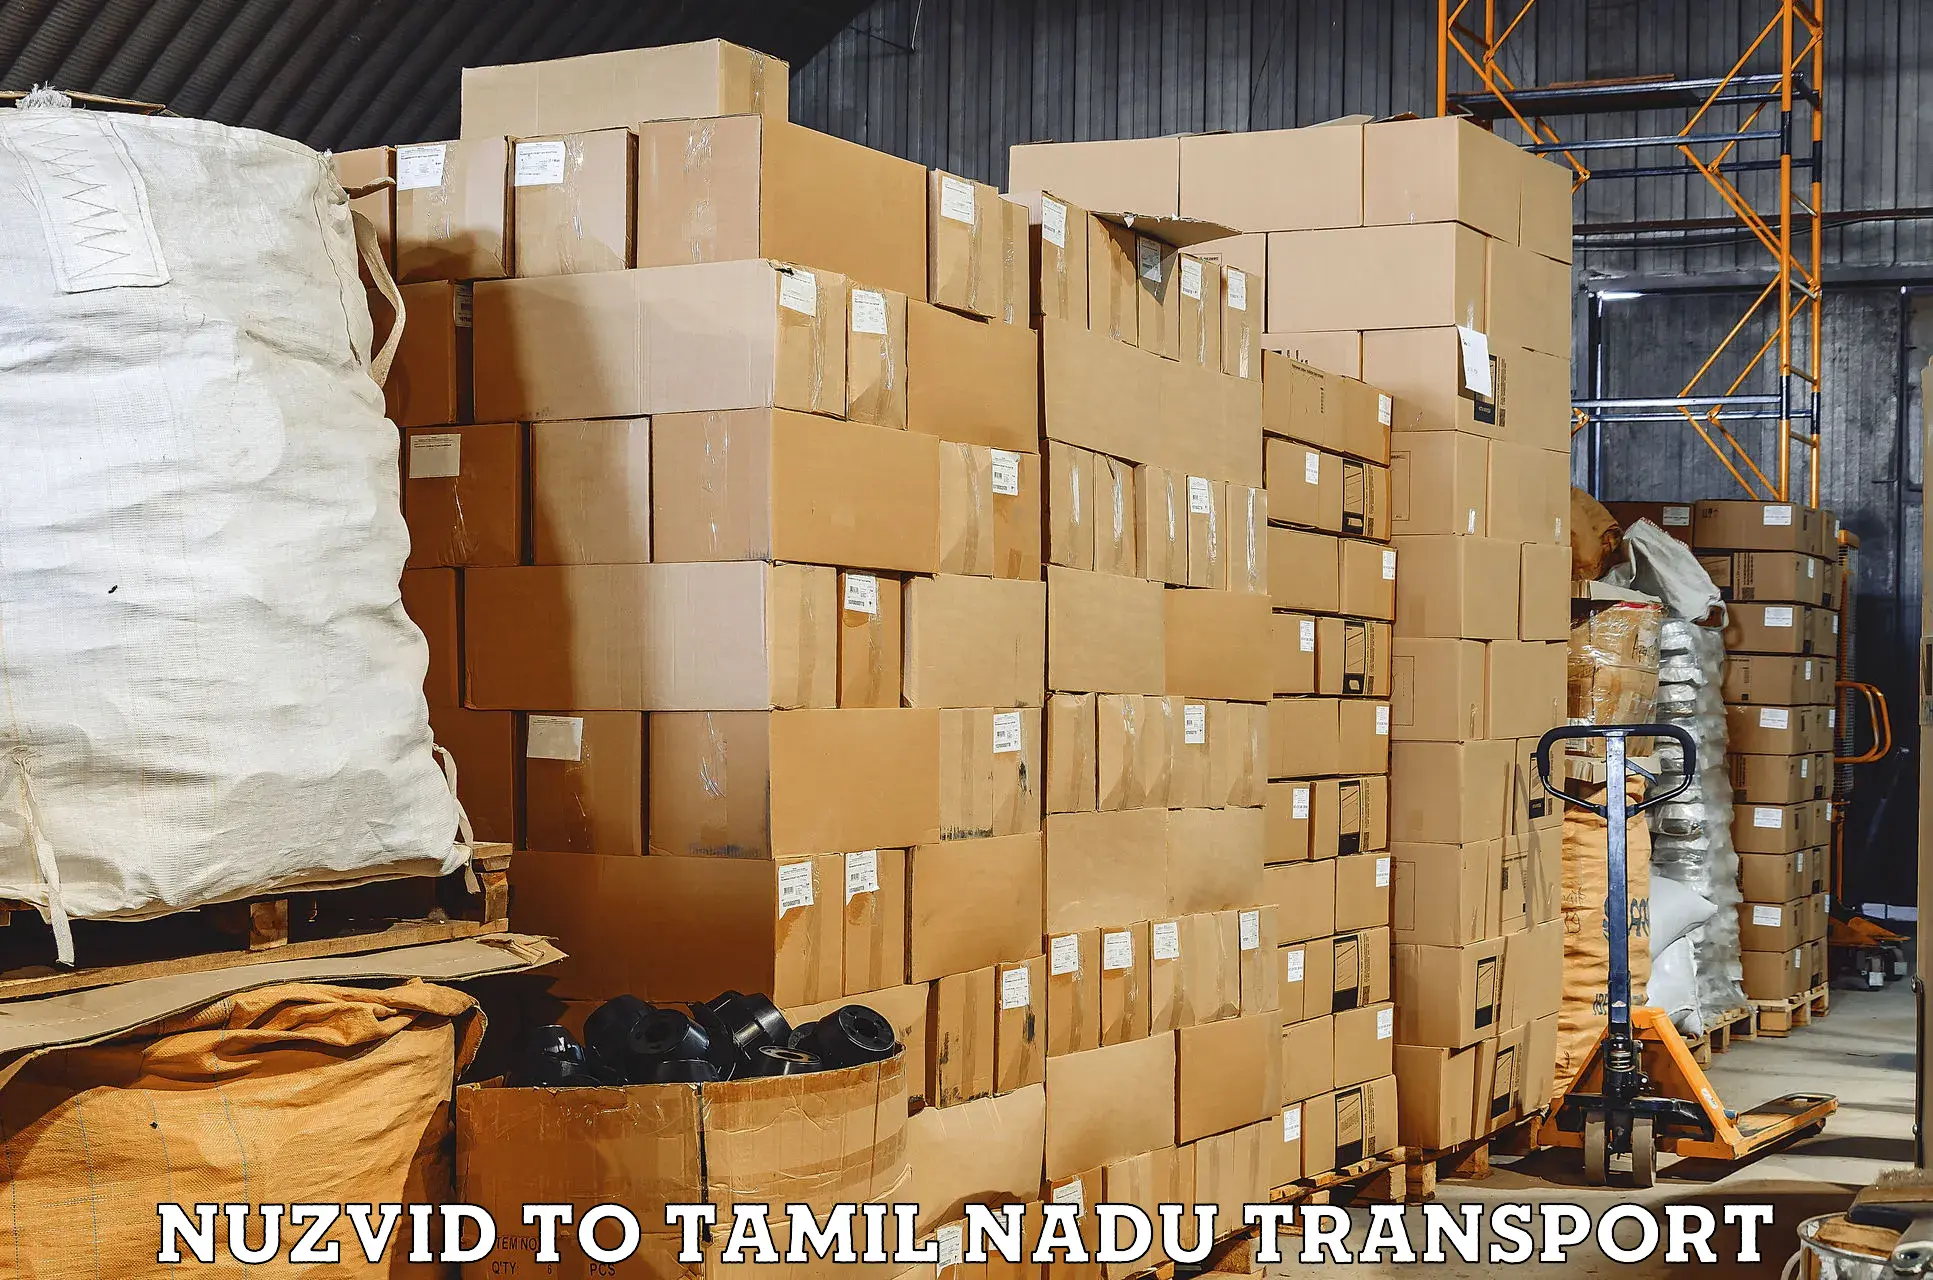 International cargo transportation services Nuzvid to Tamil Nadu